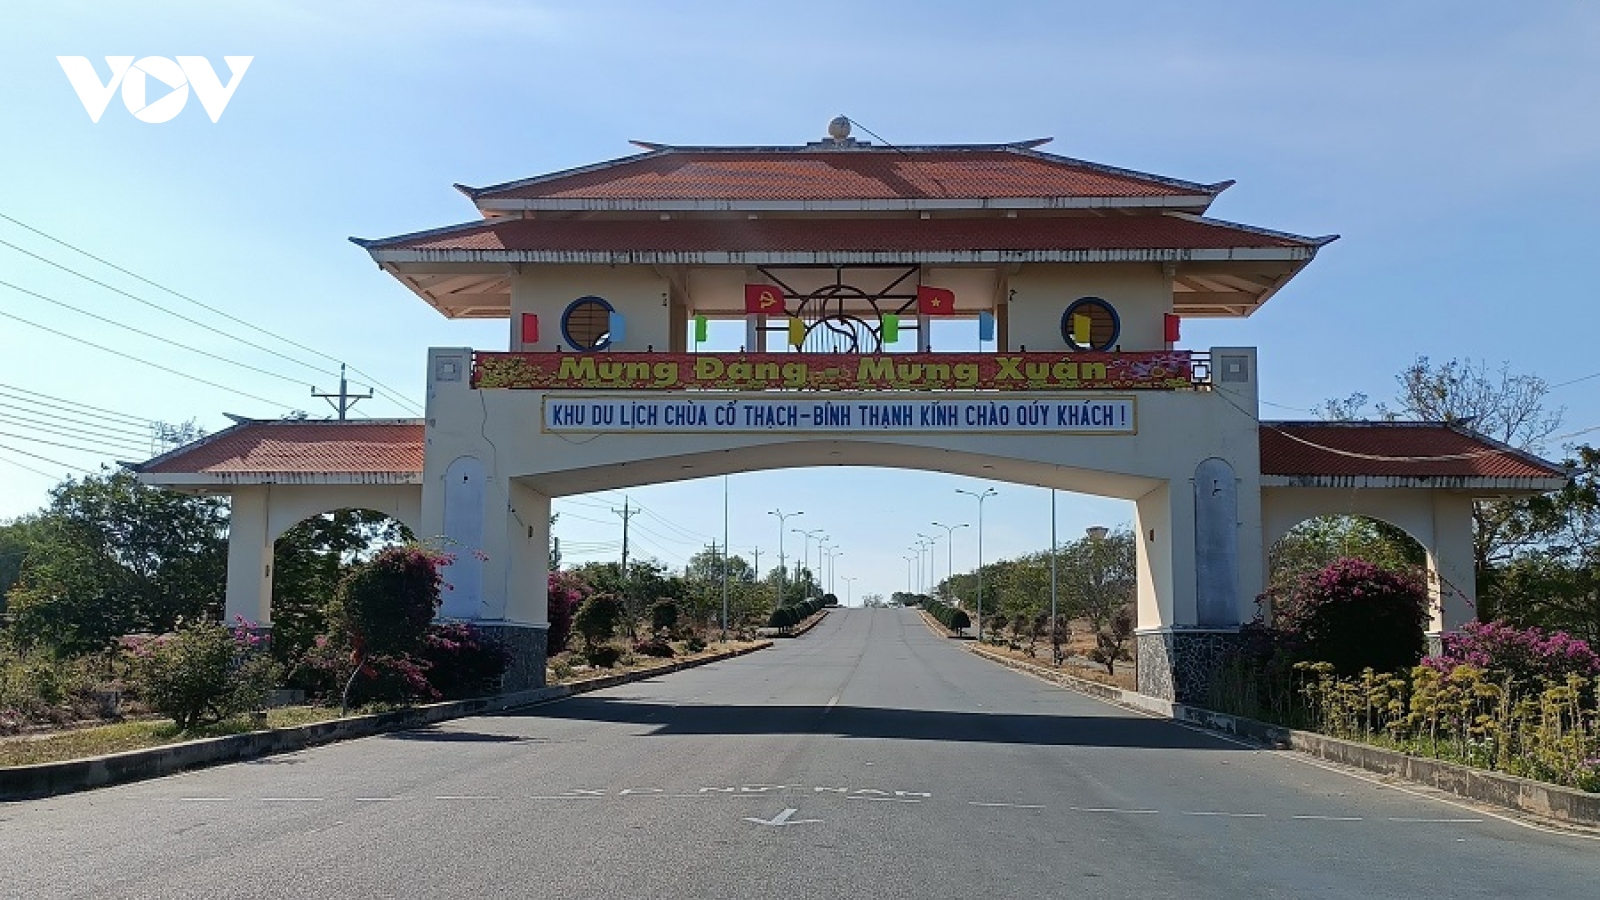 Lý do huyện Tuy Phong, tỉnh Bình Thuận không sáp nhập xã Bình Thạnh